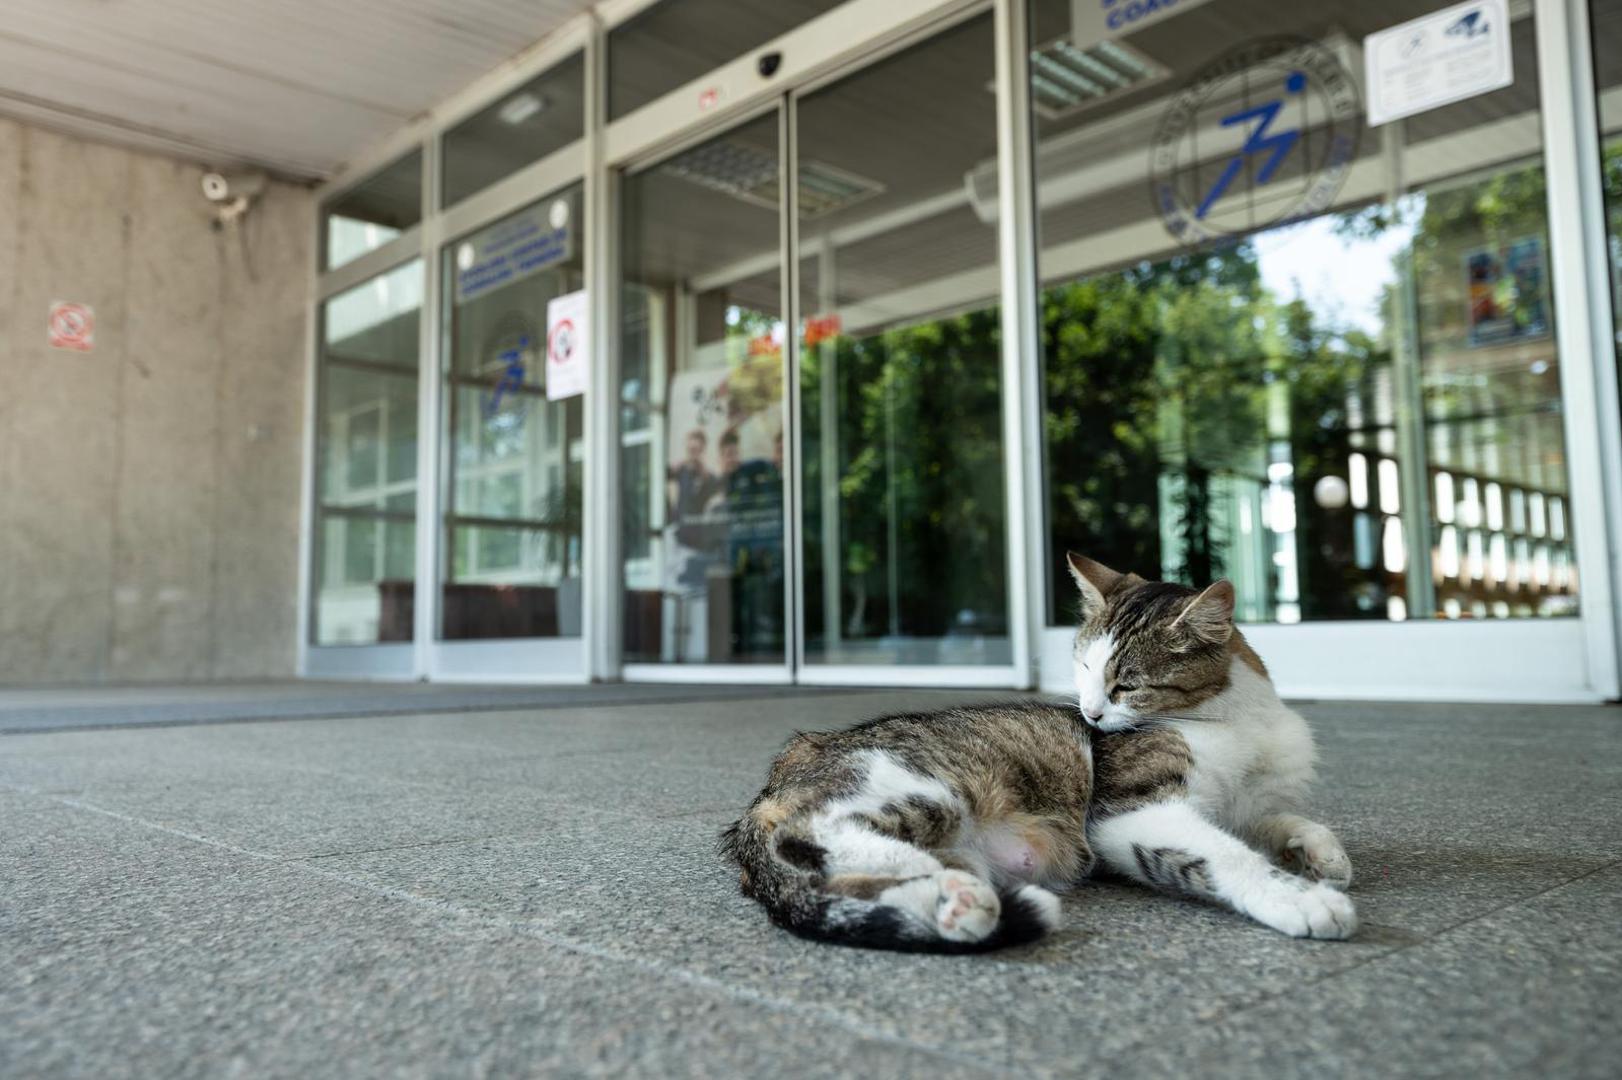 Ivić je objavio fotografiju mačke koja sklupčana leži na tepihu ispred ulaza u Kineziološki fakultet u Sveučilišta u Zagrebu na Jarunu.